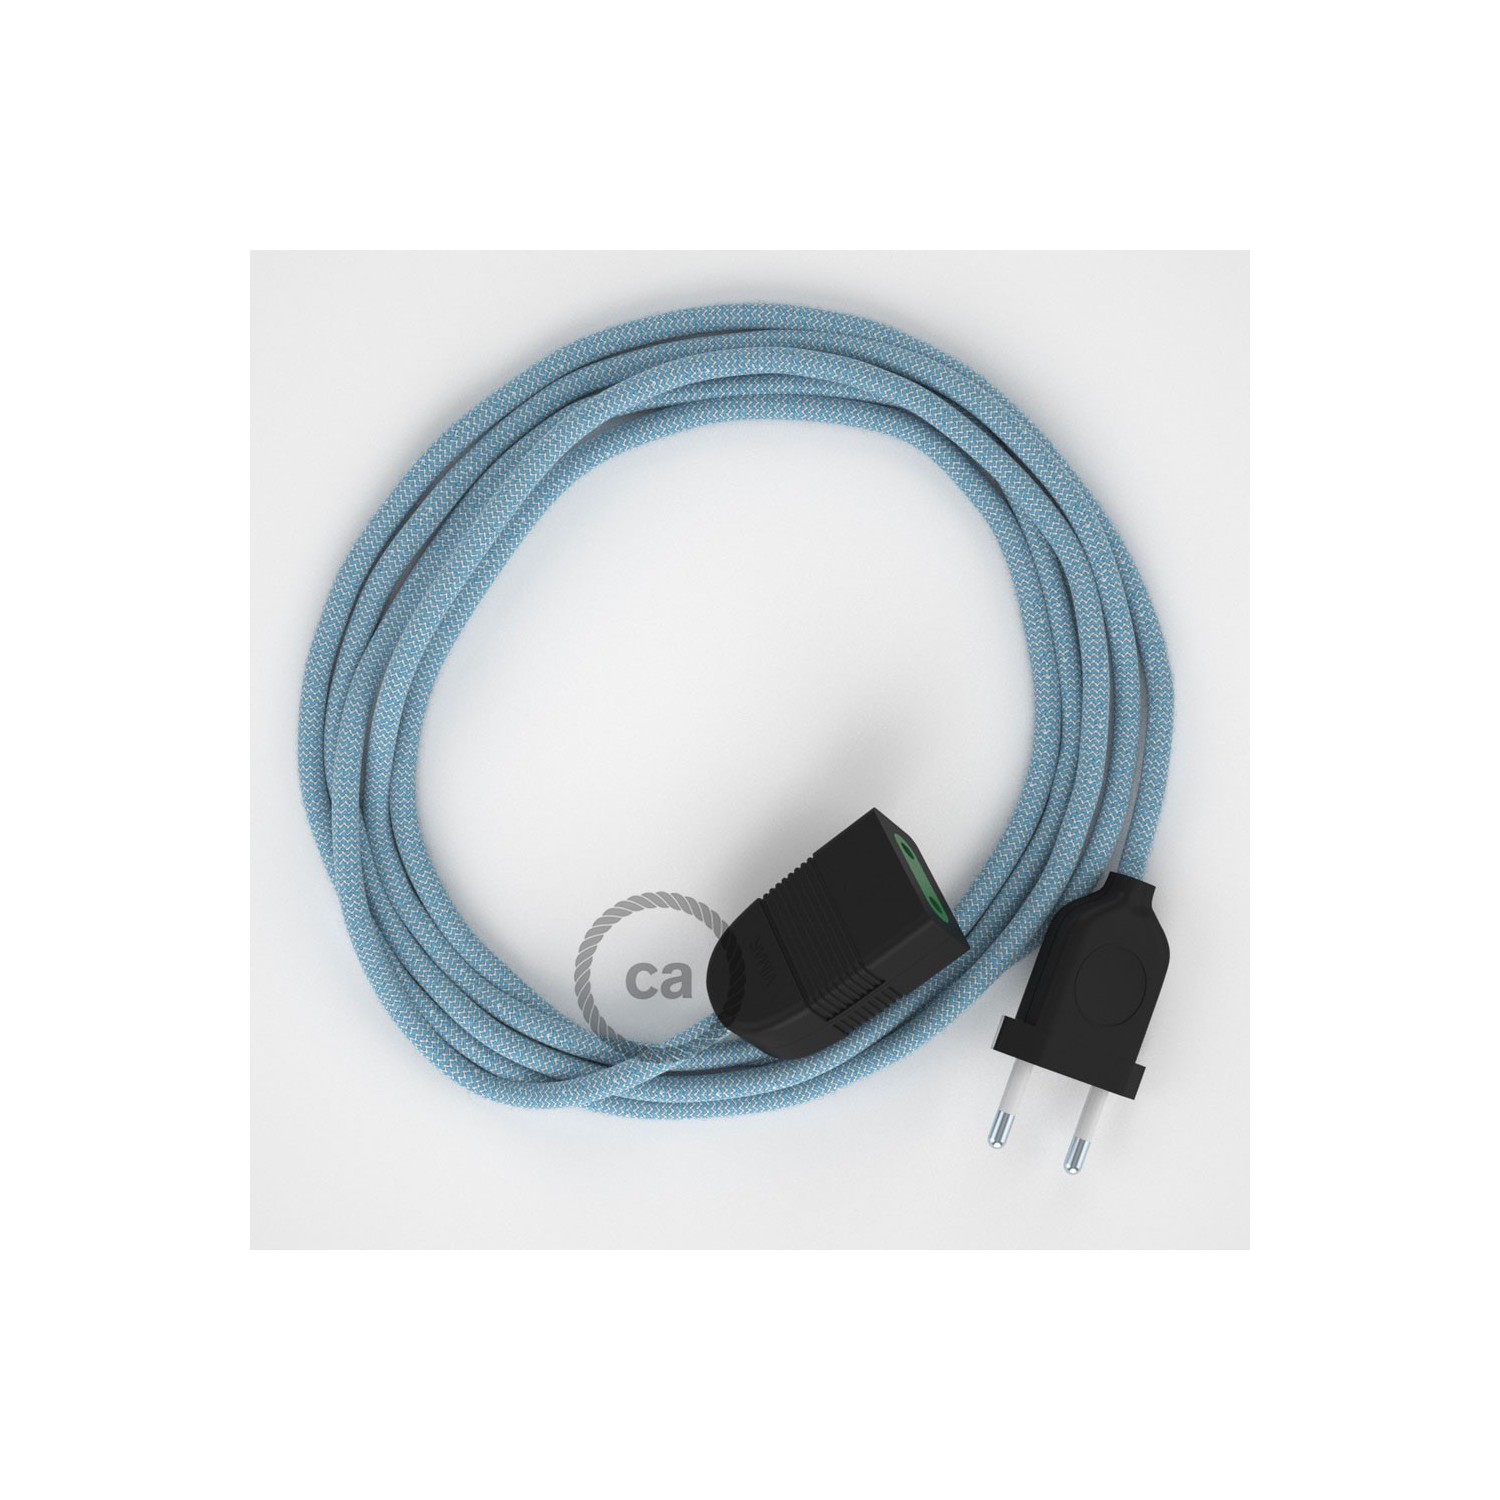 Rallonge électrique avec câble textile RD75 Coton et Lin Naturel ZigZag Bleu Steward 2P 10A Made in Italy.